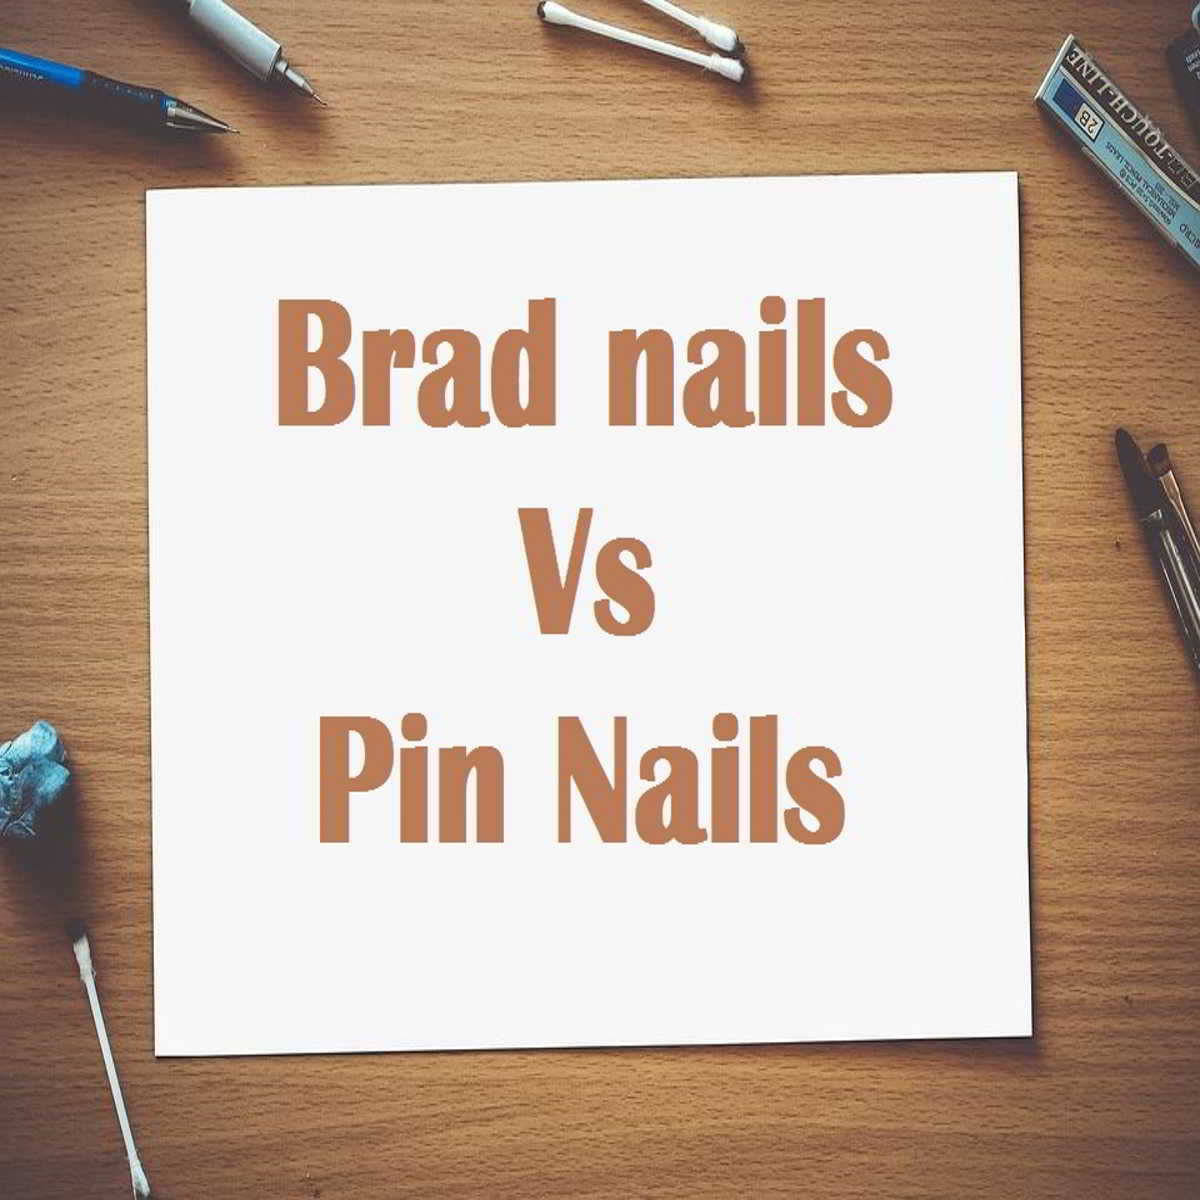 Brad nail vs Pin nail